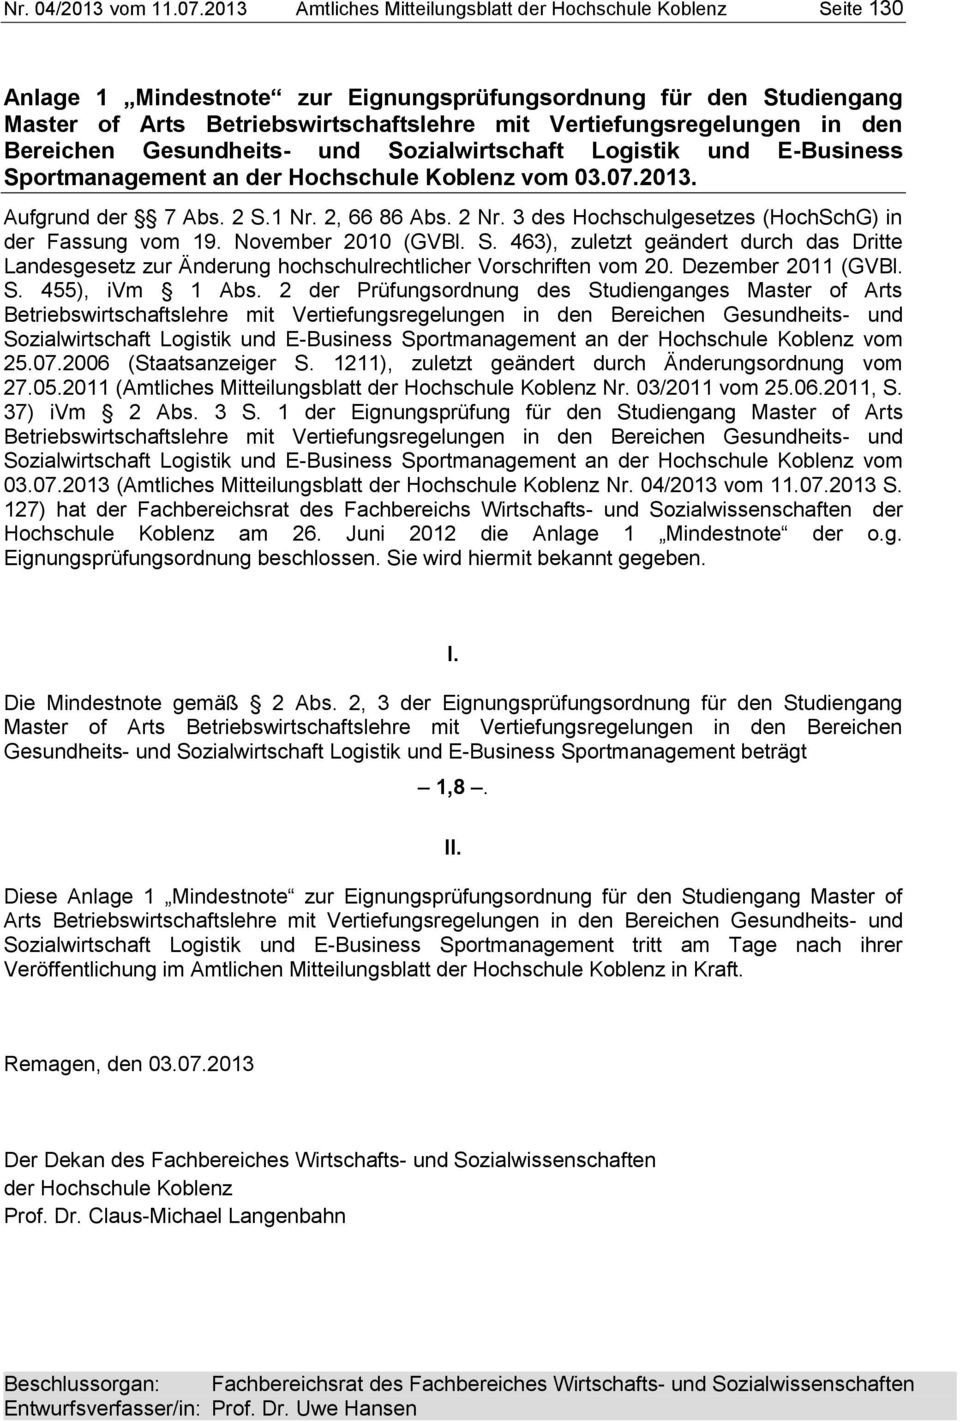 in den Bereichen Gesundheits- und Sozialwirtschaft Logistik und E-Business Sportmanagement an der Hochschule Koblenz vom 03.07.2013. Aufgrund der 7 Abs. 2 S.1 Nr. 2, 66 86 Abs. 2 Nr.